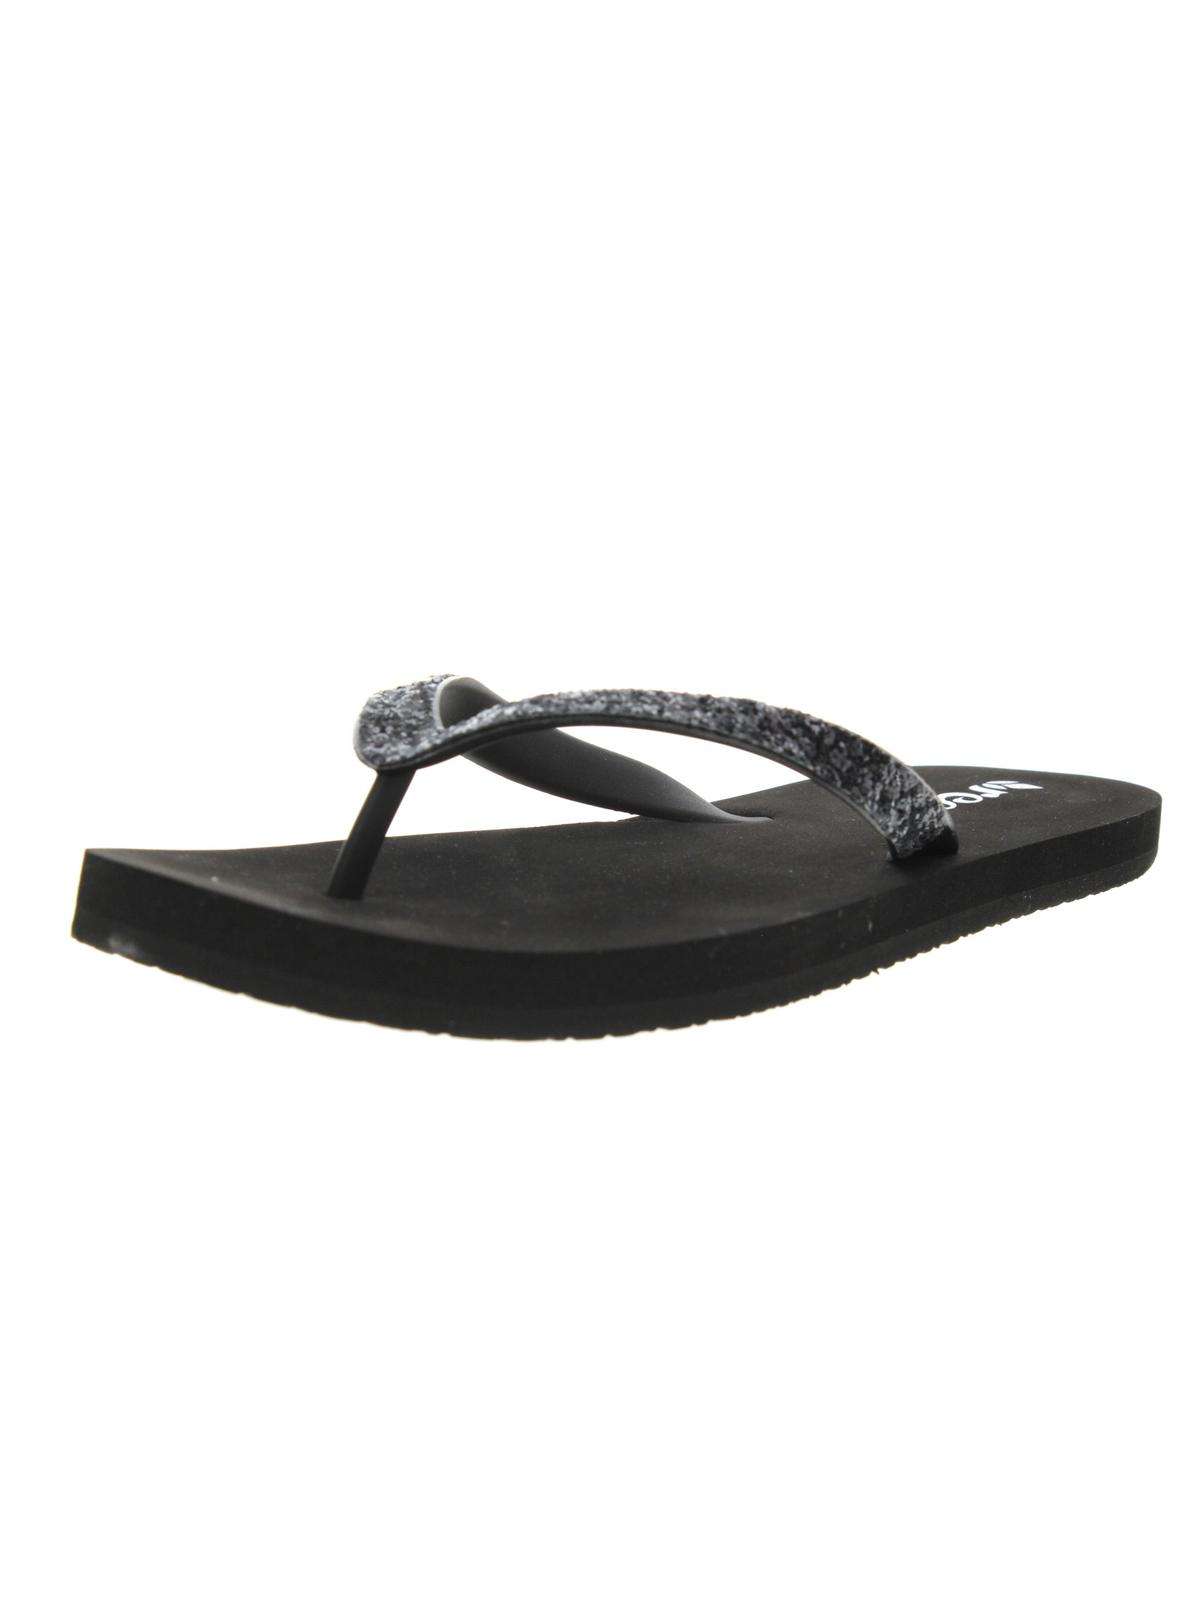 REEF Womens Shimmer Flip-Flops Thong Sandals